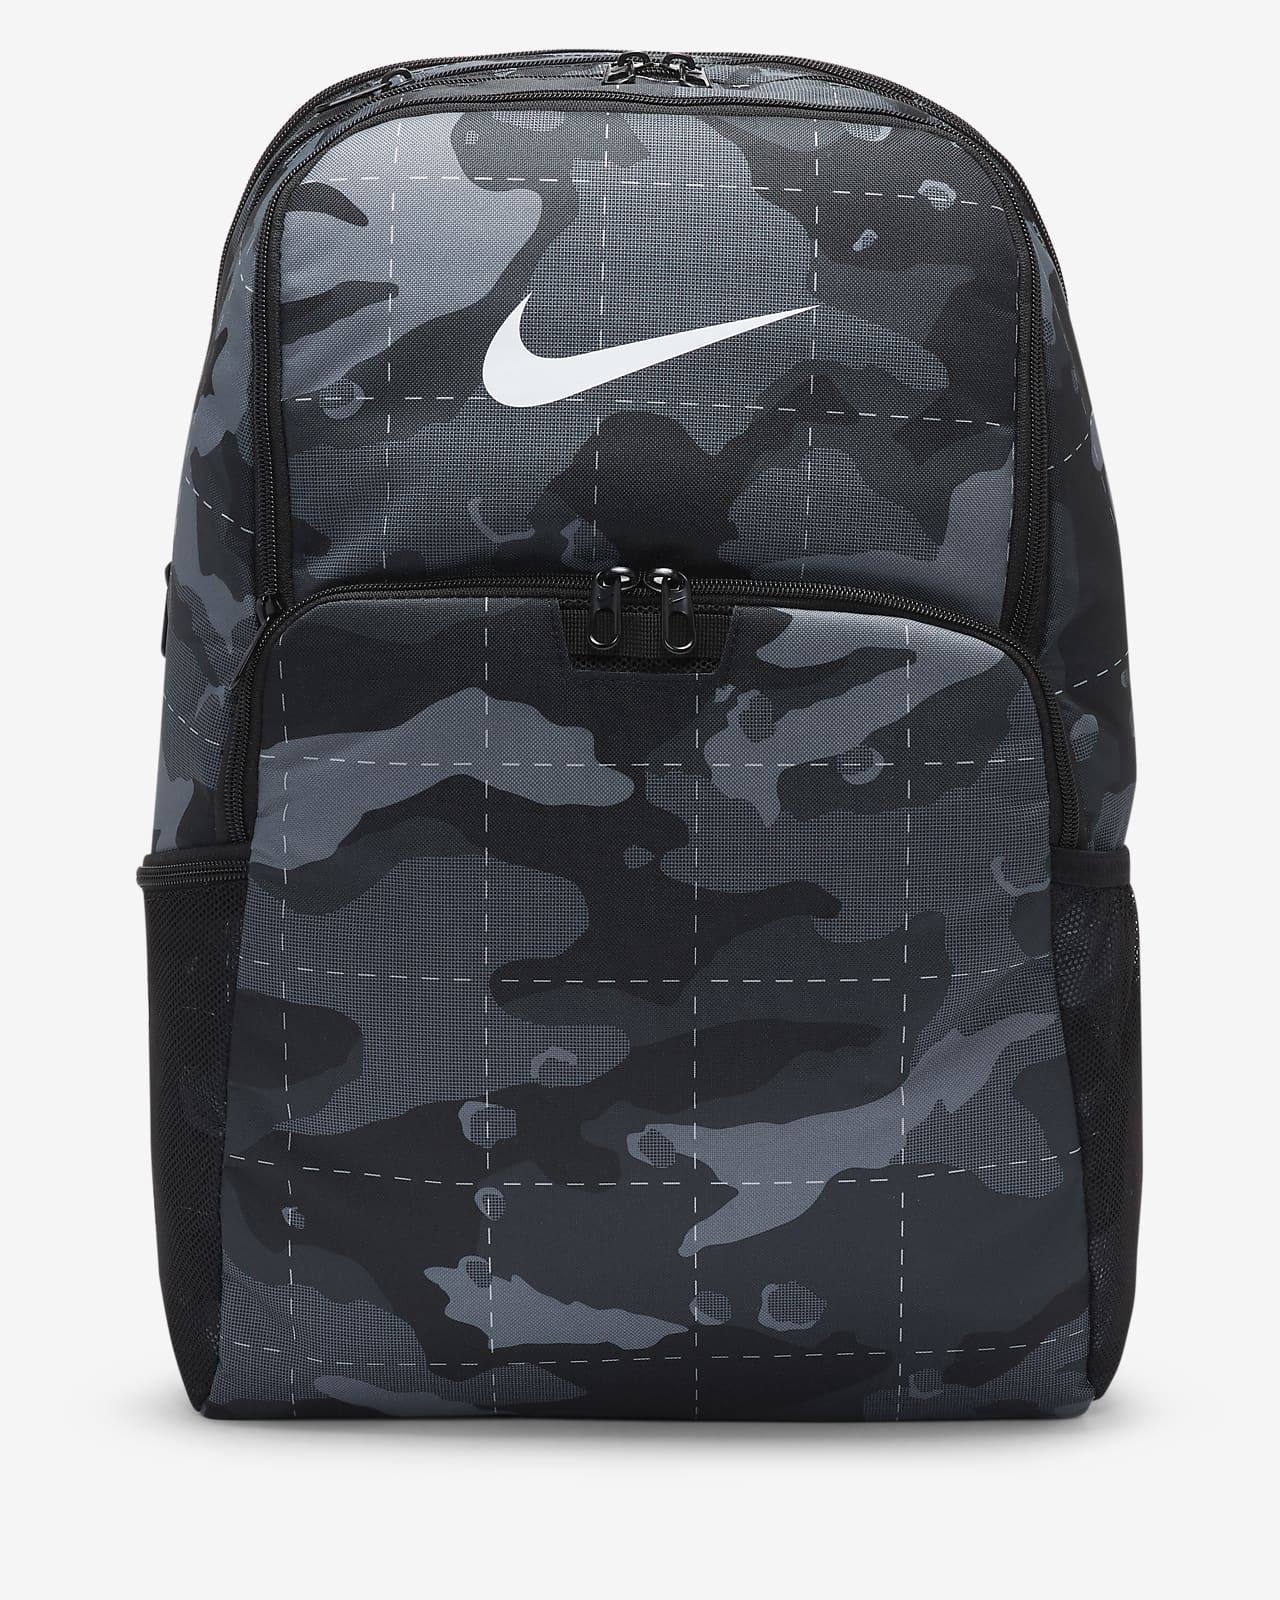 Nike Brasilia Camo Training Backpack (Extra Large, 30L)